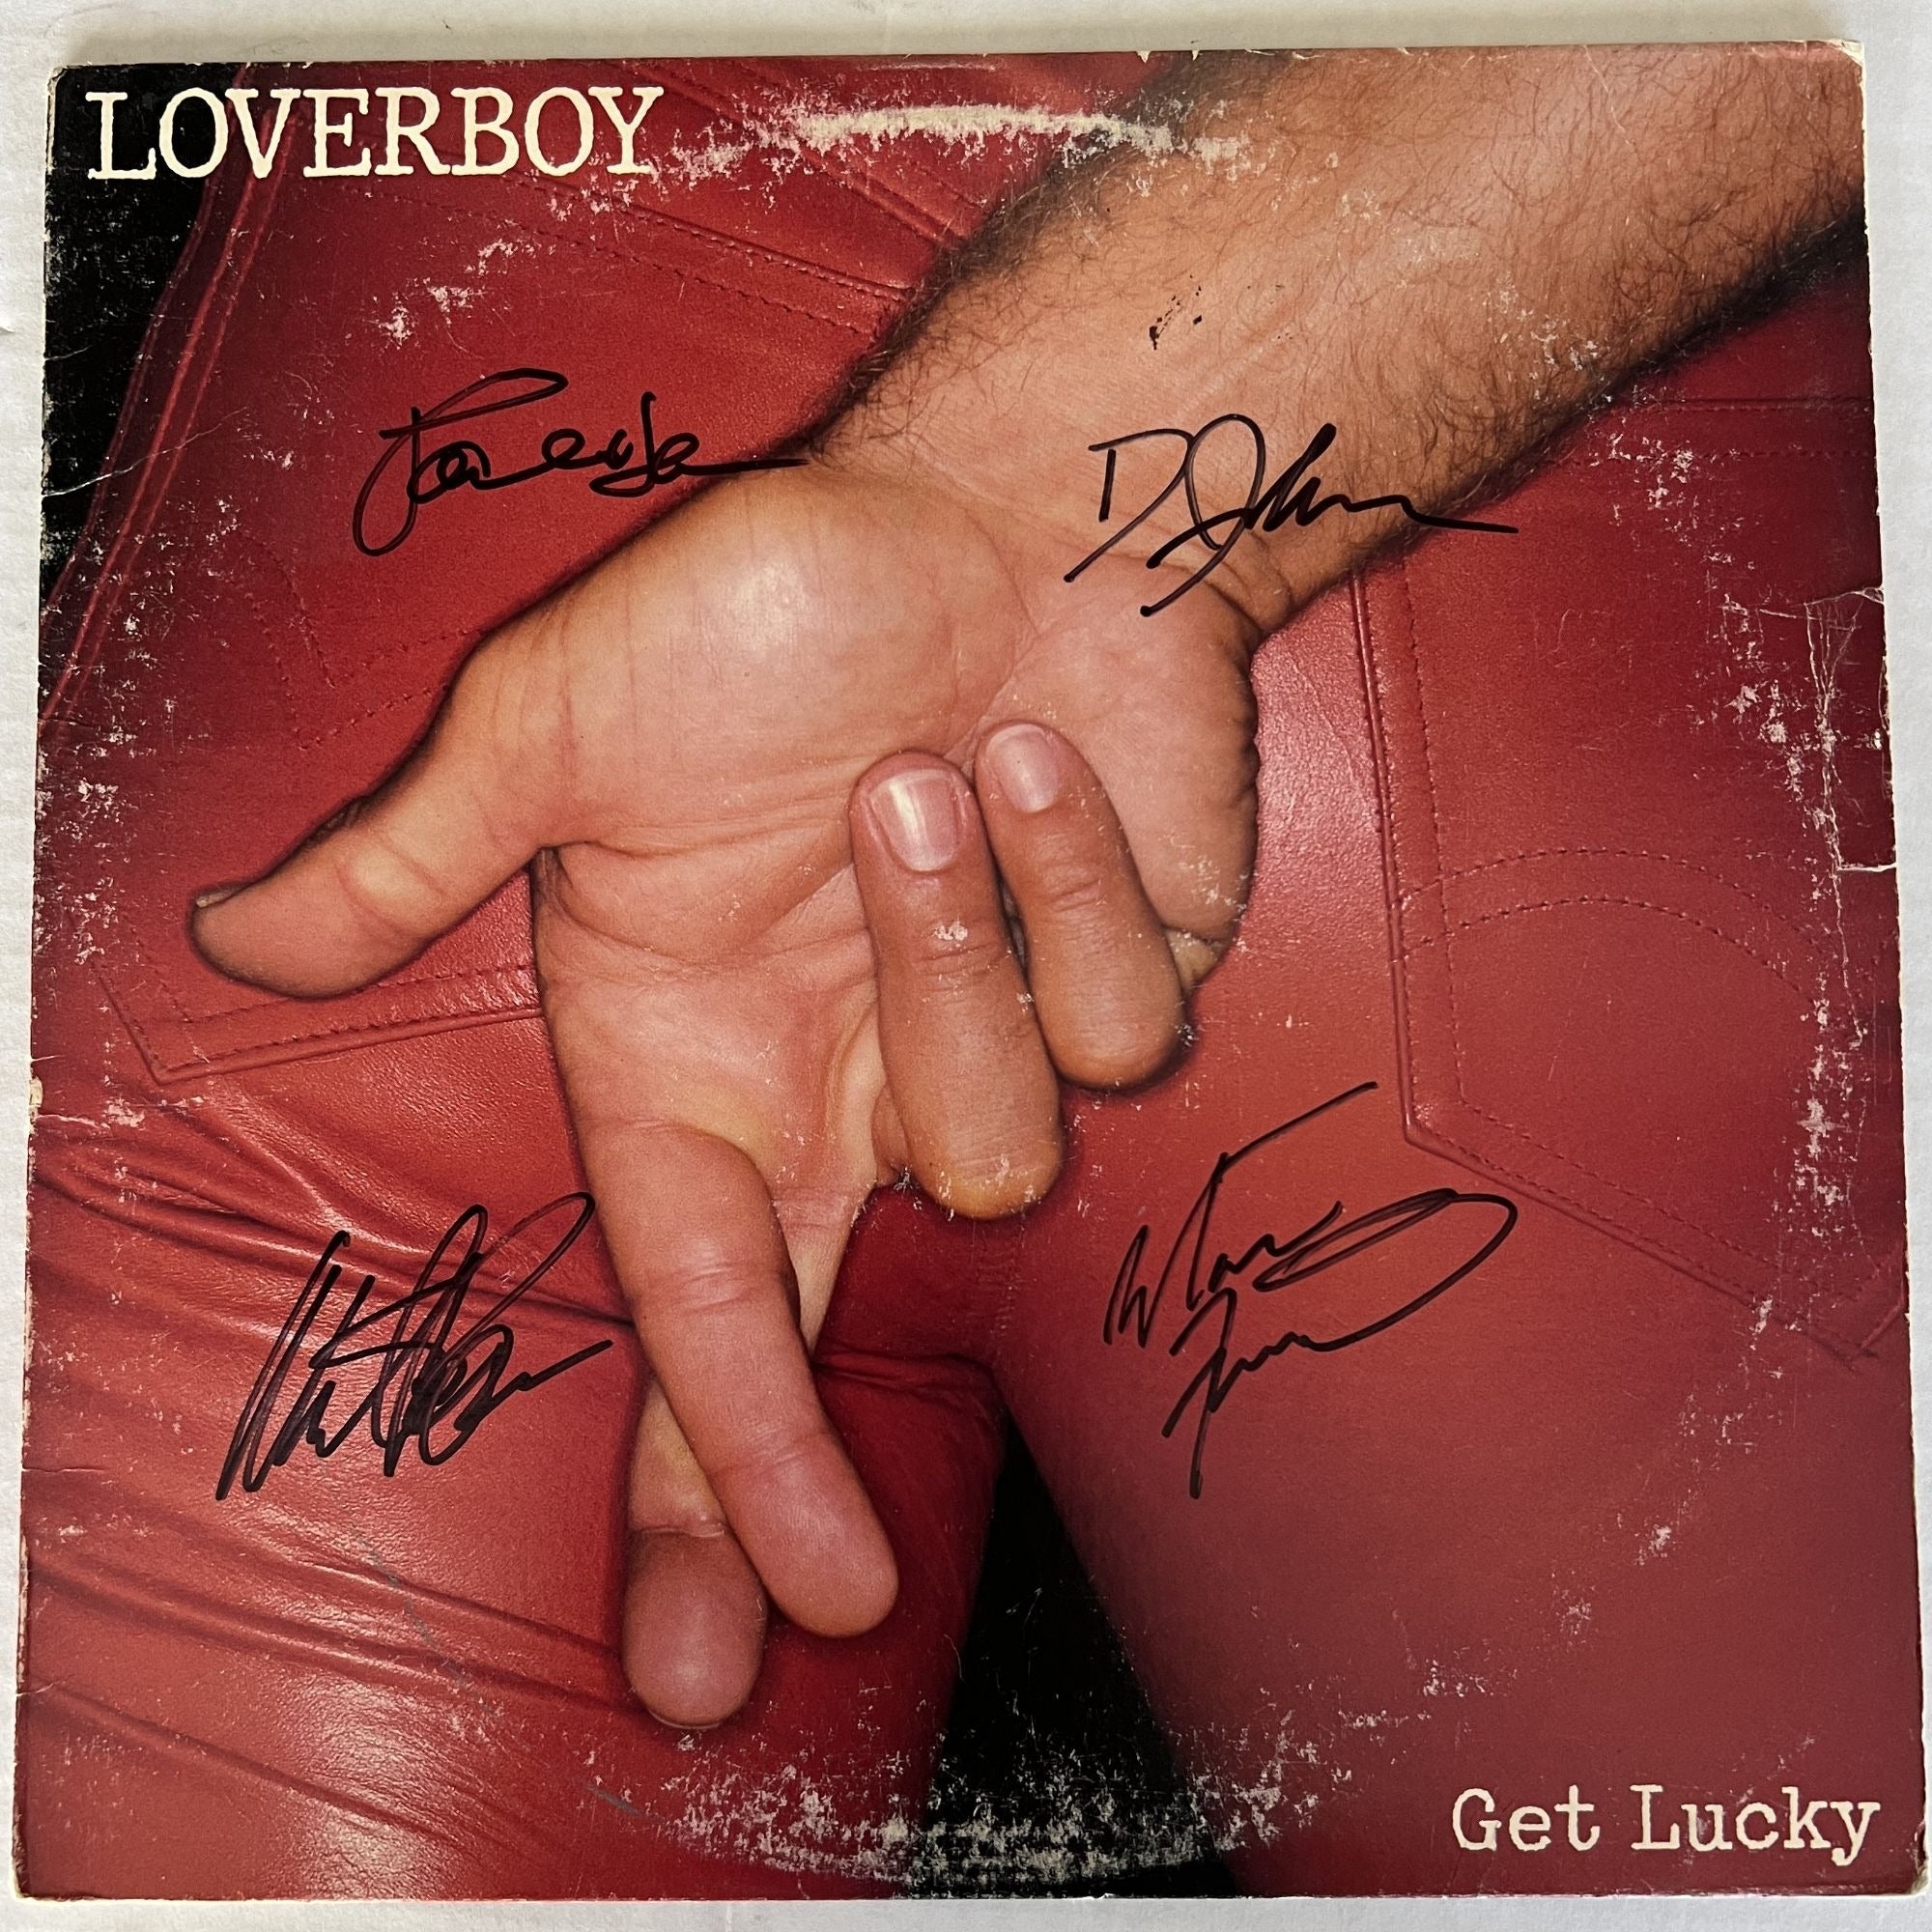 Loverboy "Get Lucky" Lp signed Mike Reno ,Paul Dean, Doug Johnson , Scott Smith, Matt Frenette